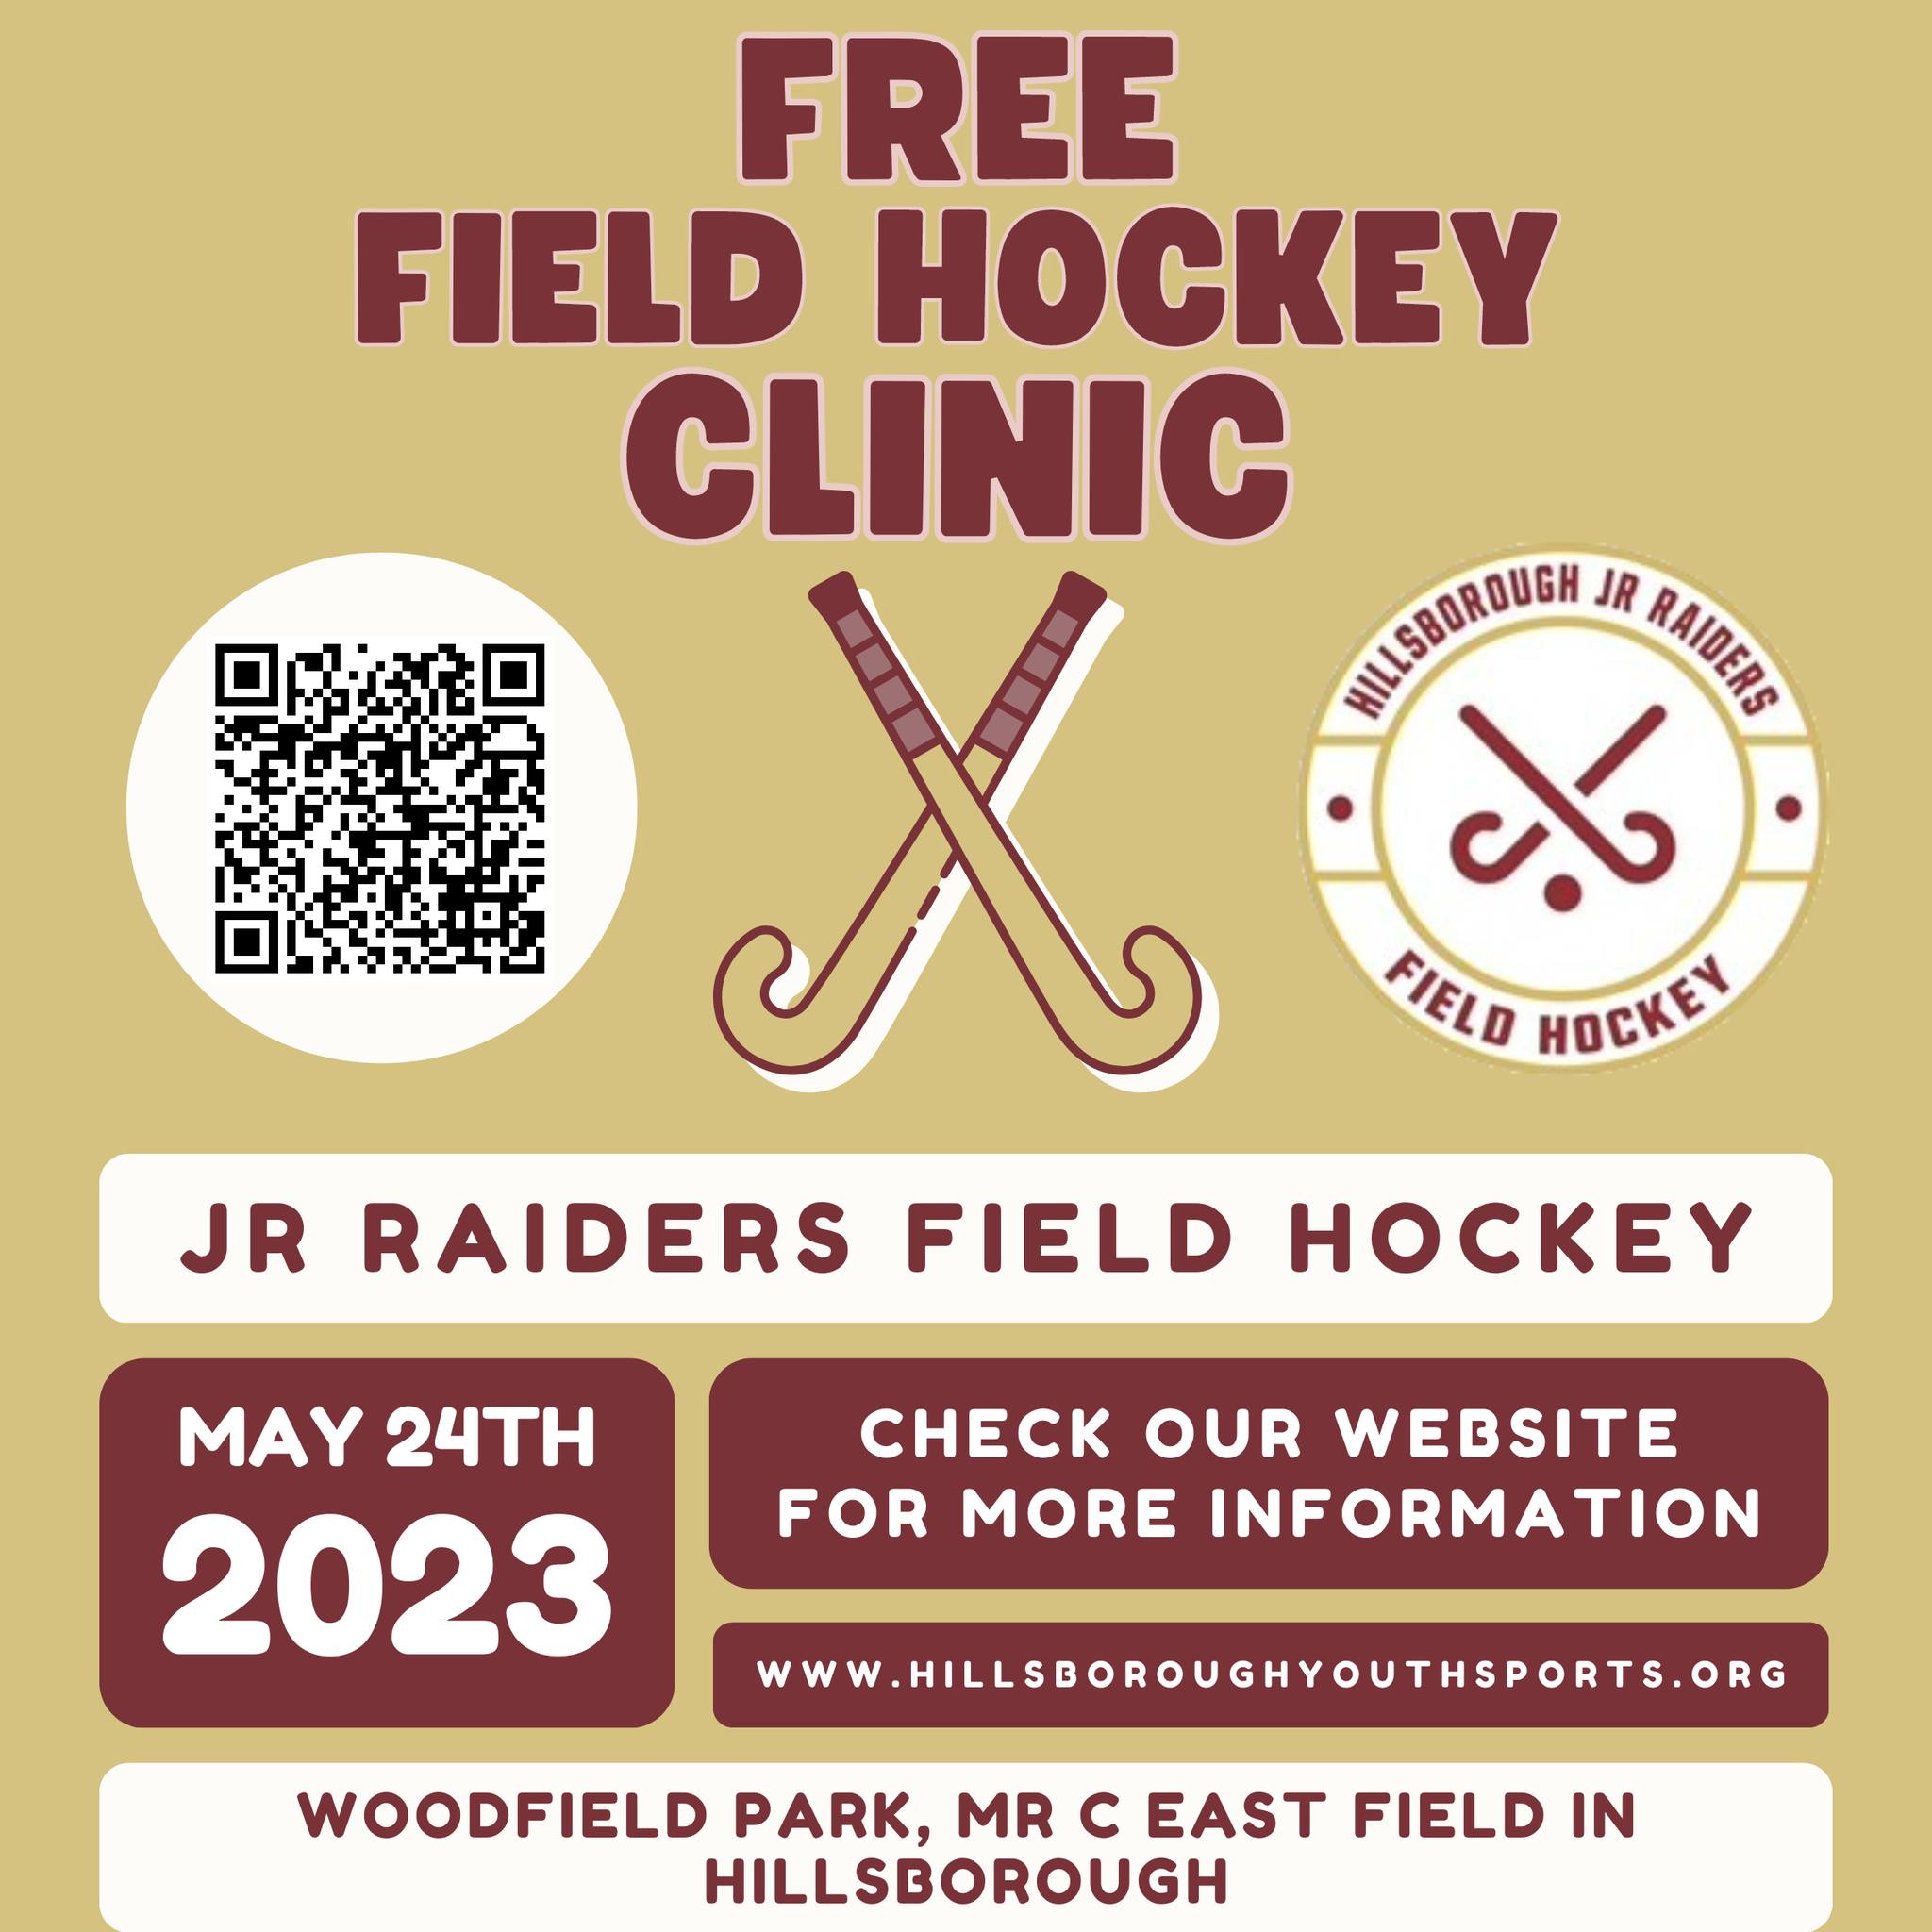 Field Hockey Clinic